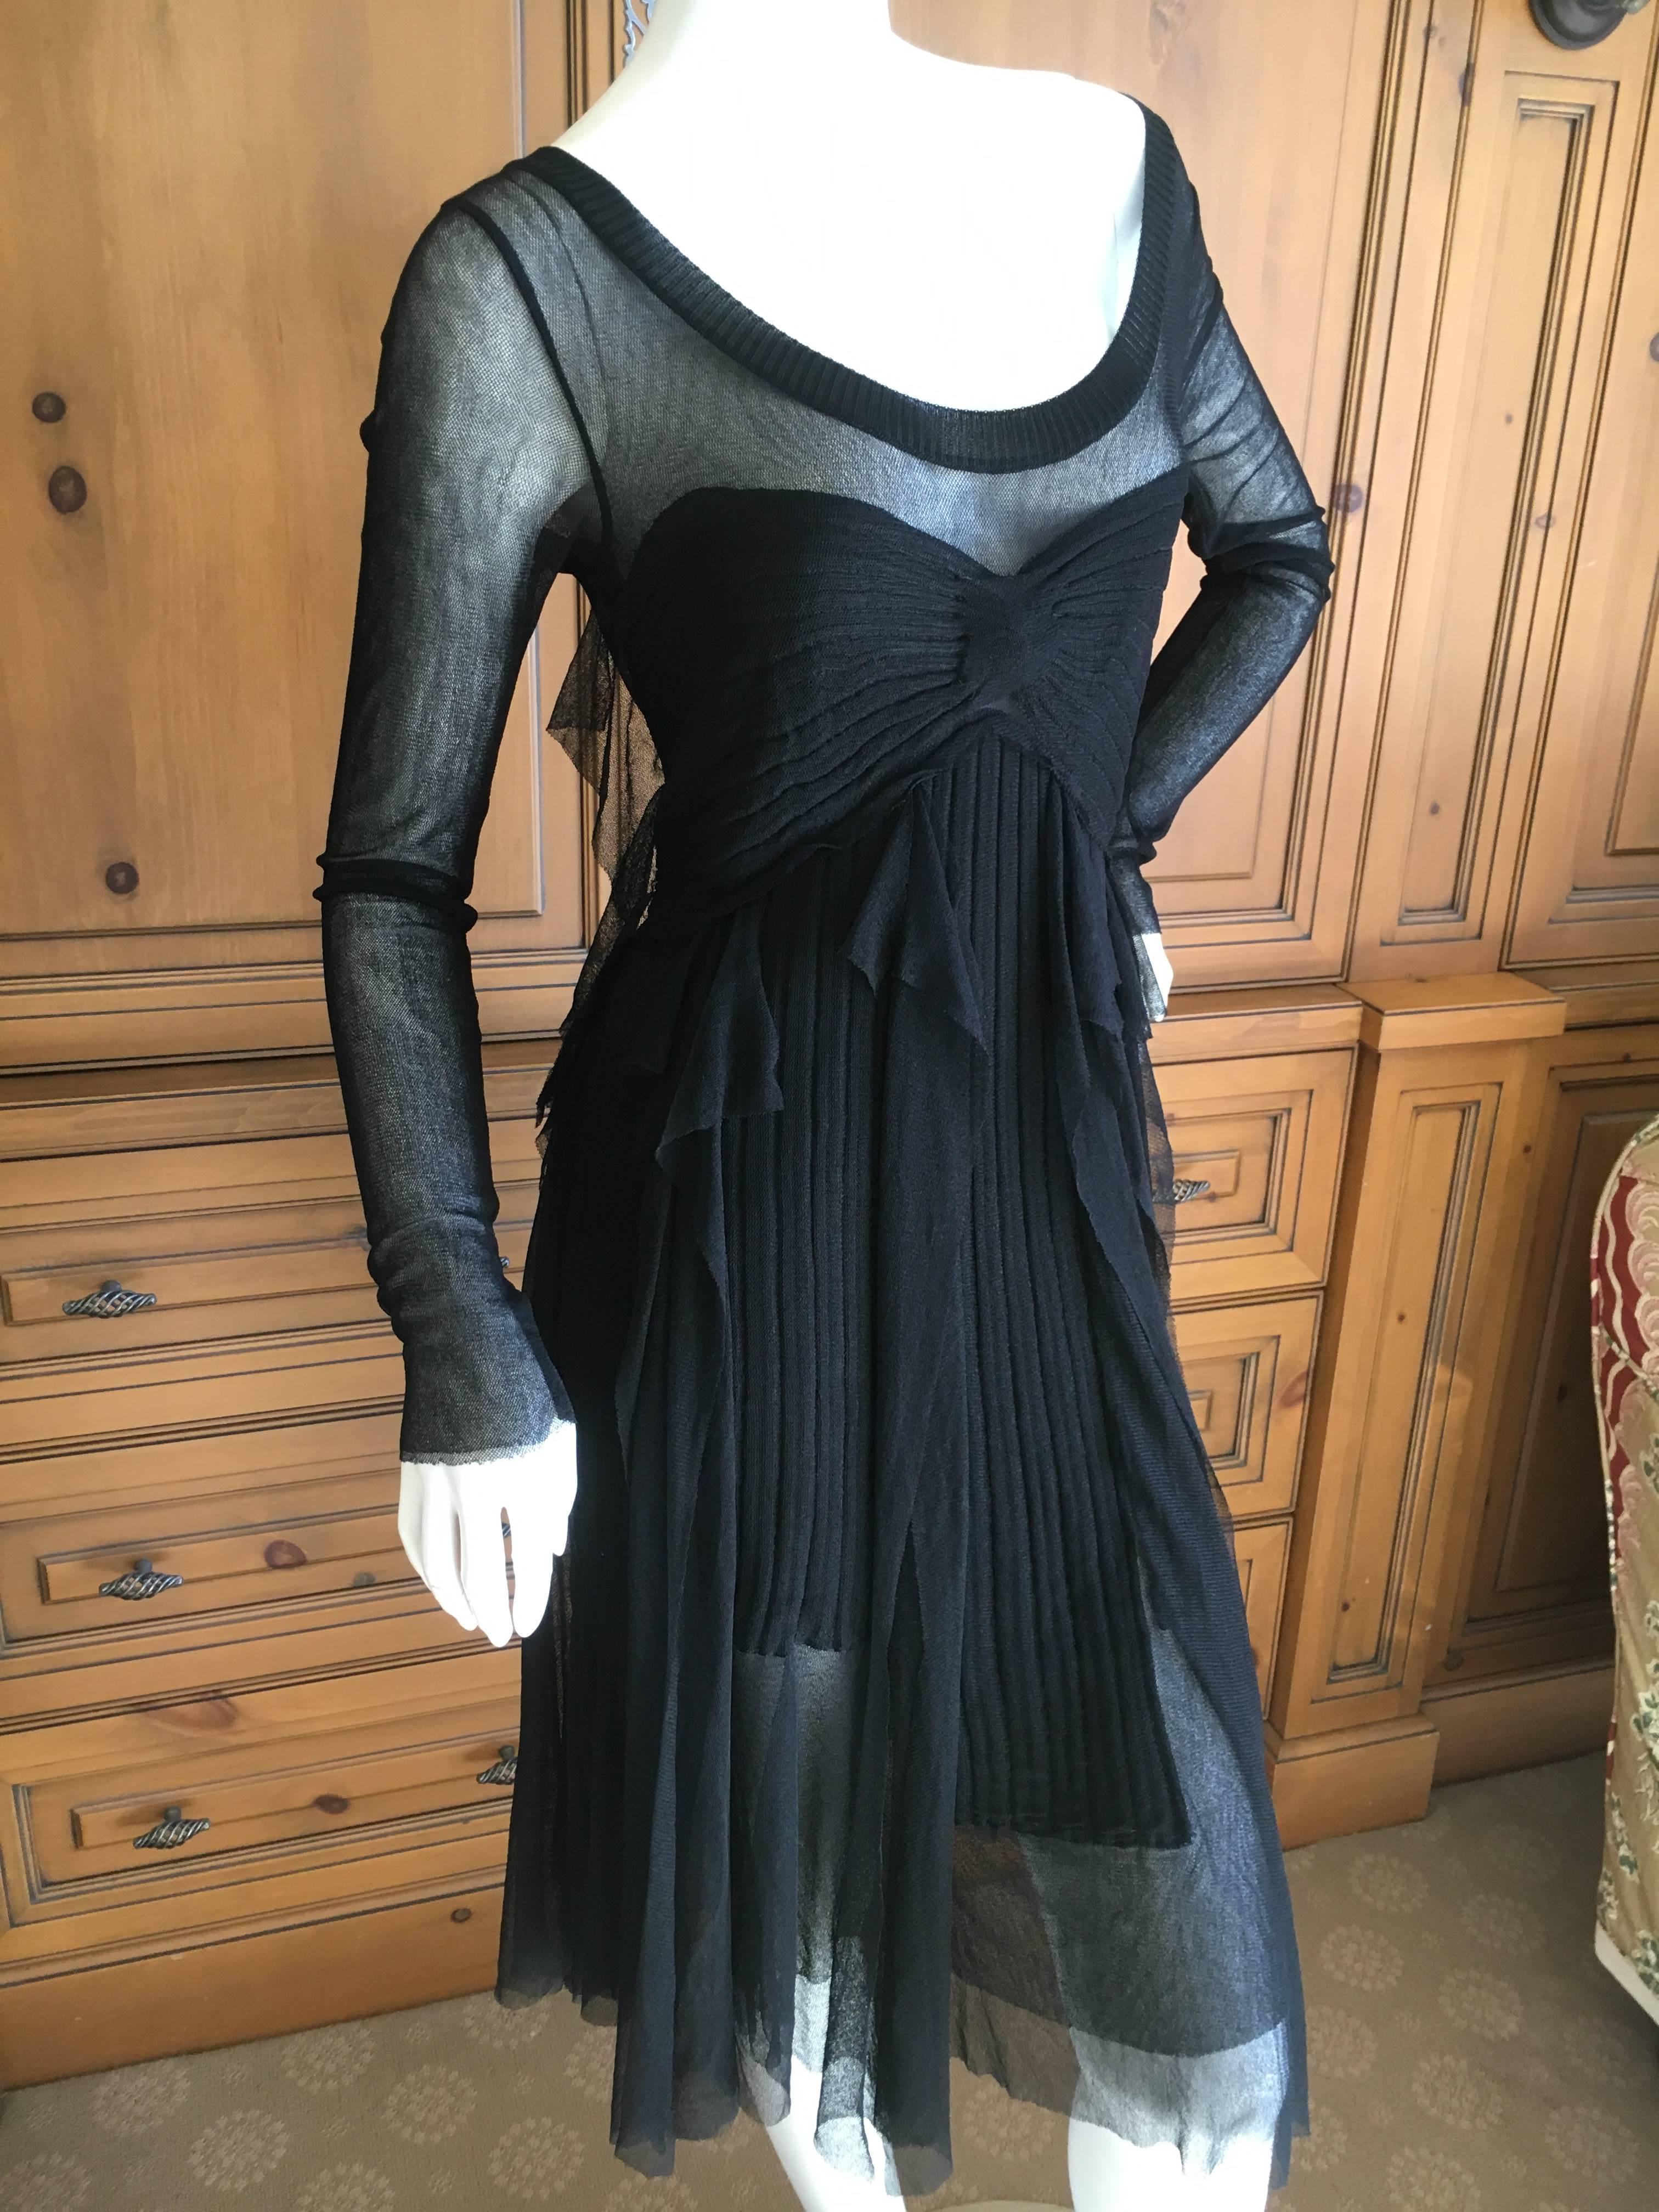 Jean Paul Gaultier Maille by Fuzzi Little Black Dress w Sheer Back.
Size M
Bust 34"
Waist 26"
